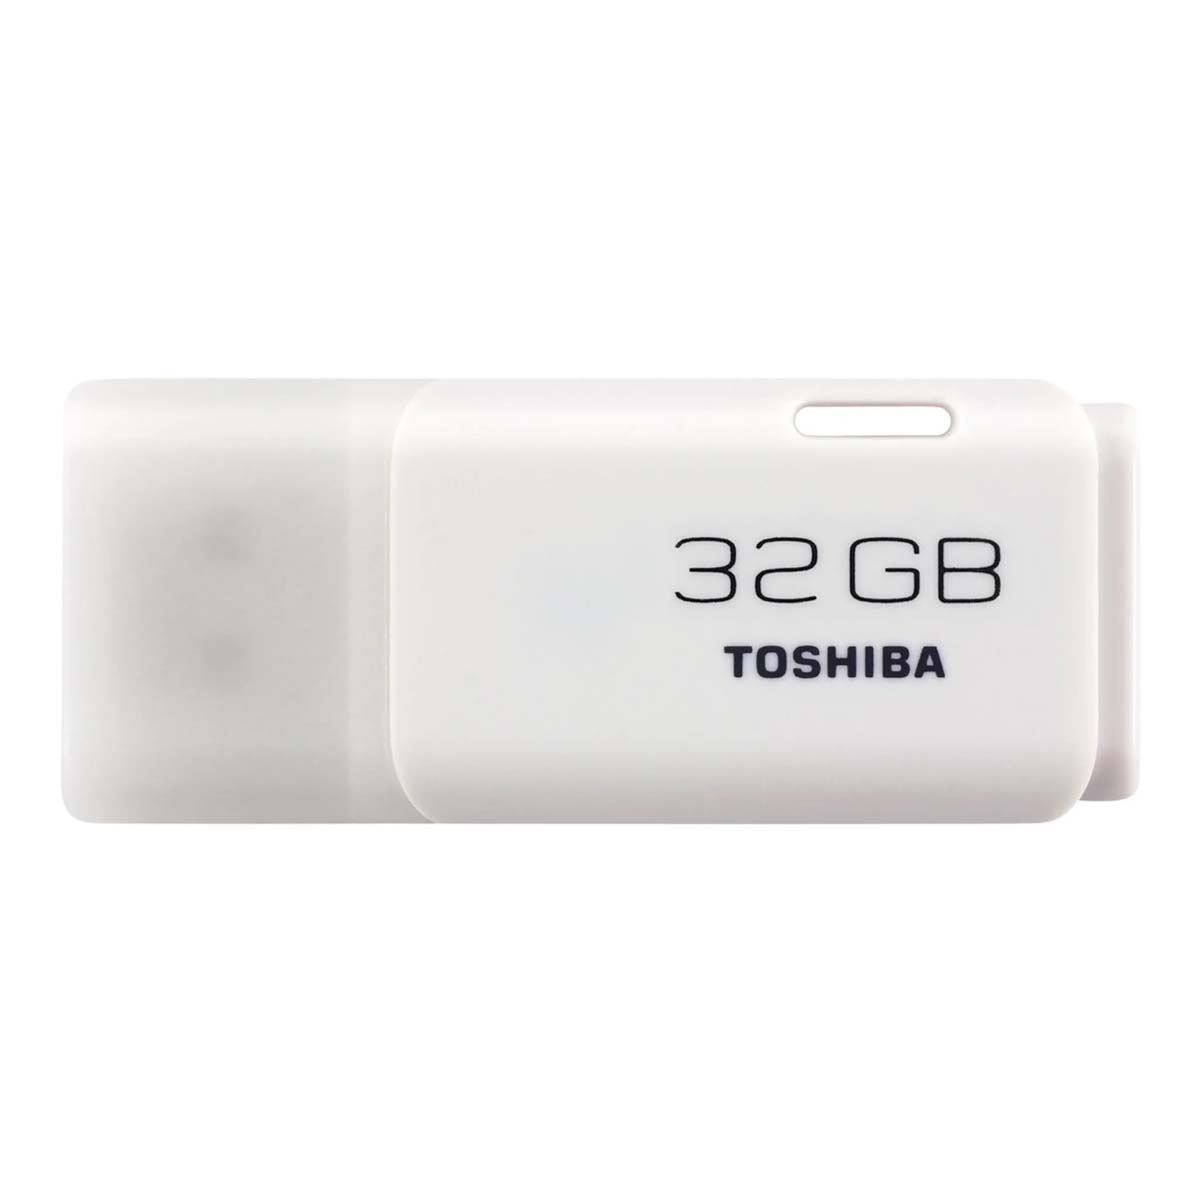 USB GB 32833, Stick 32 Stick, TOSHIBA Memory